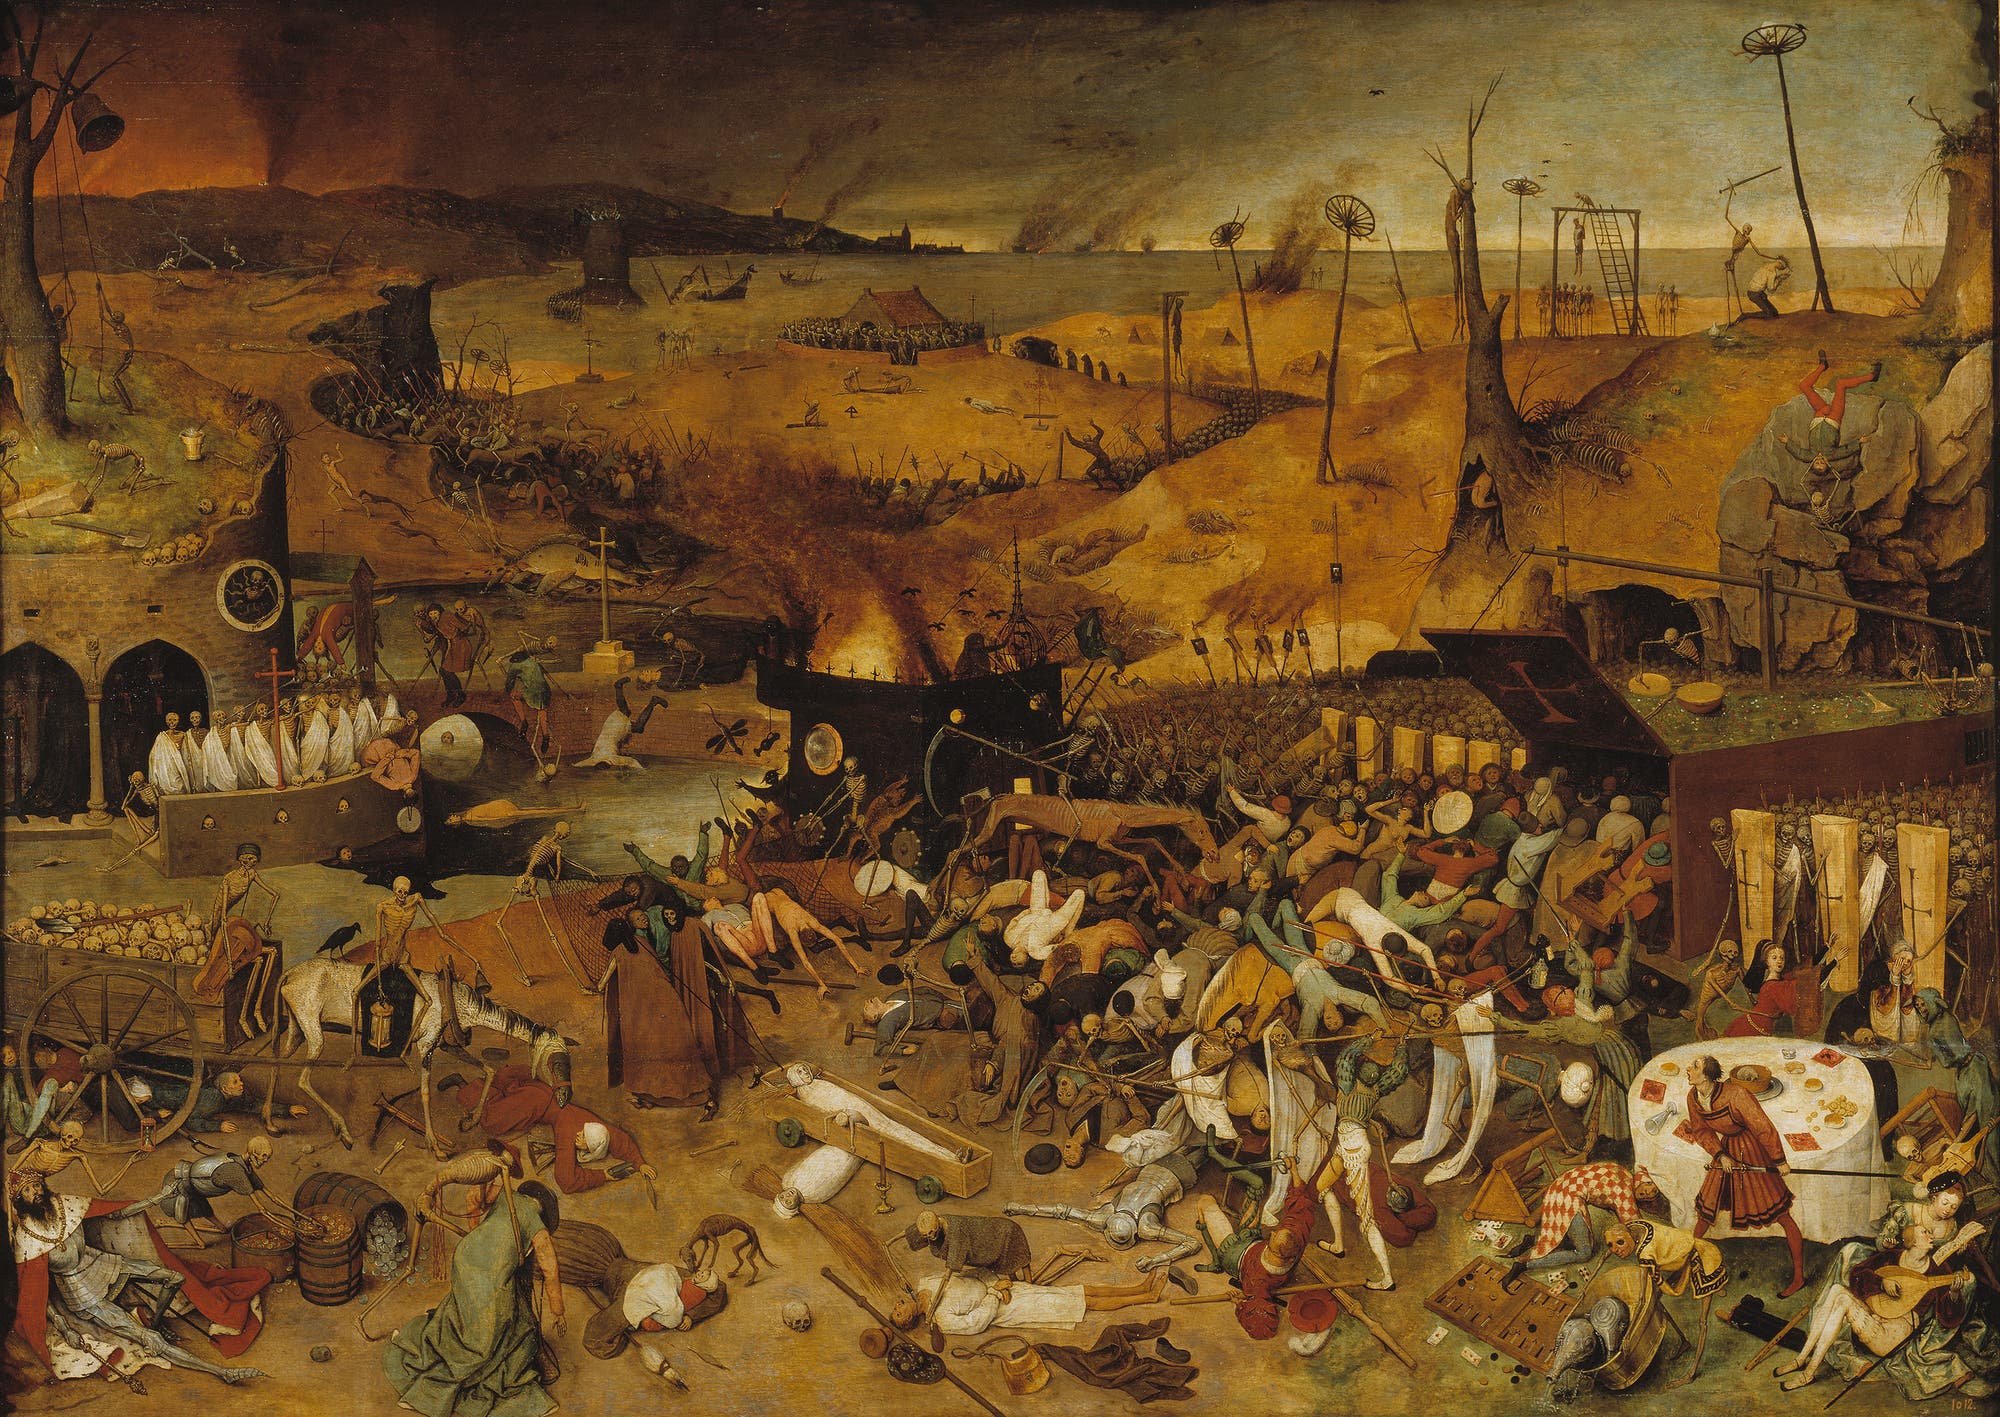 Gemälde von Pieter Bruegel dem Älteren: Der Triumph des Todes